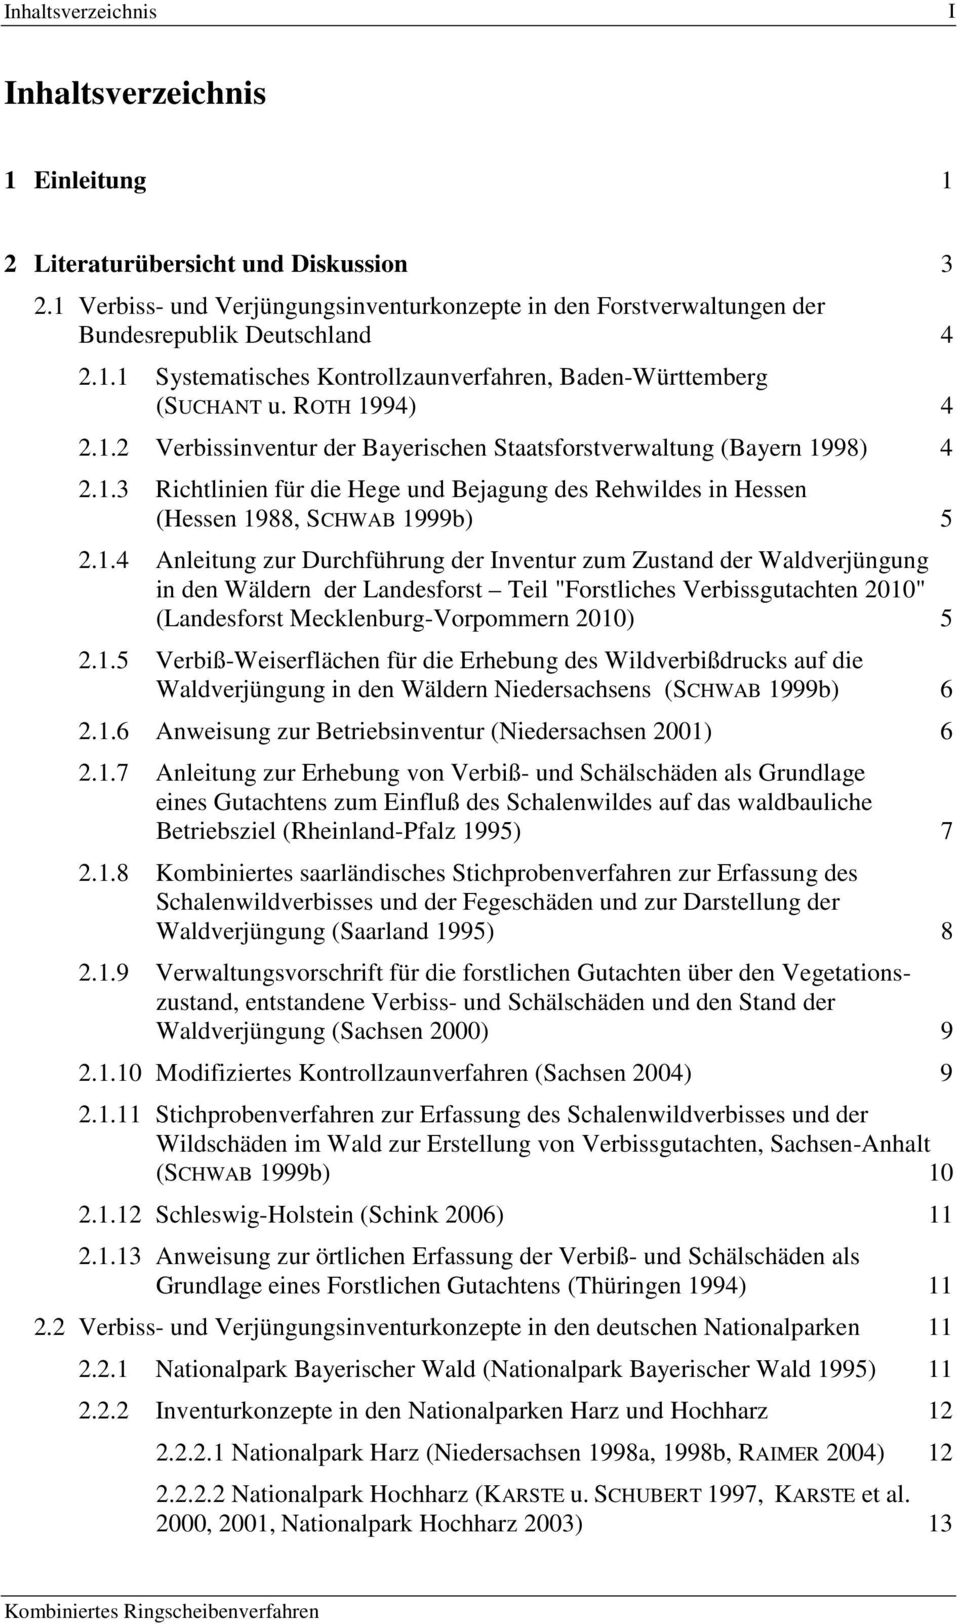 1.5 Verbiß-Weiserflächen für die Erhebung des Wildverbißdrucks auf die Waldverjüngung in den Wäldern Niedersachsens (SCHWAB 1999b) 6 2.1.6 Anweisung zur Betriebsinventur (Niedersachsen 2001) 6 2.1.7 Anleitung zur Erhebung von Verbiß- und Schälschäden als Grundlage eines Gutachtens zum Einfluß des Schalenwildes auf das waldbauliche Betriebsziel (Rheinland-Pfalz 1995) 7 2.